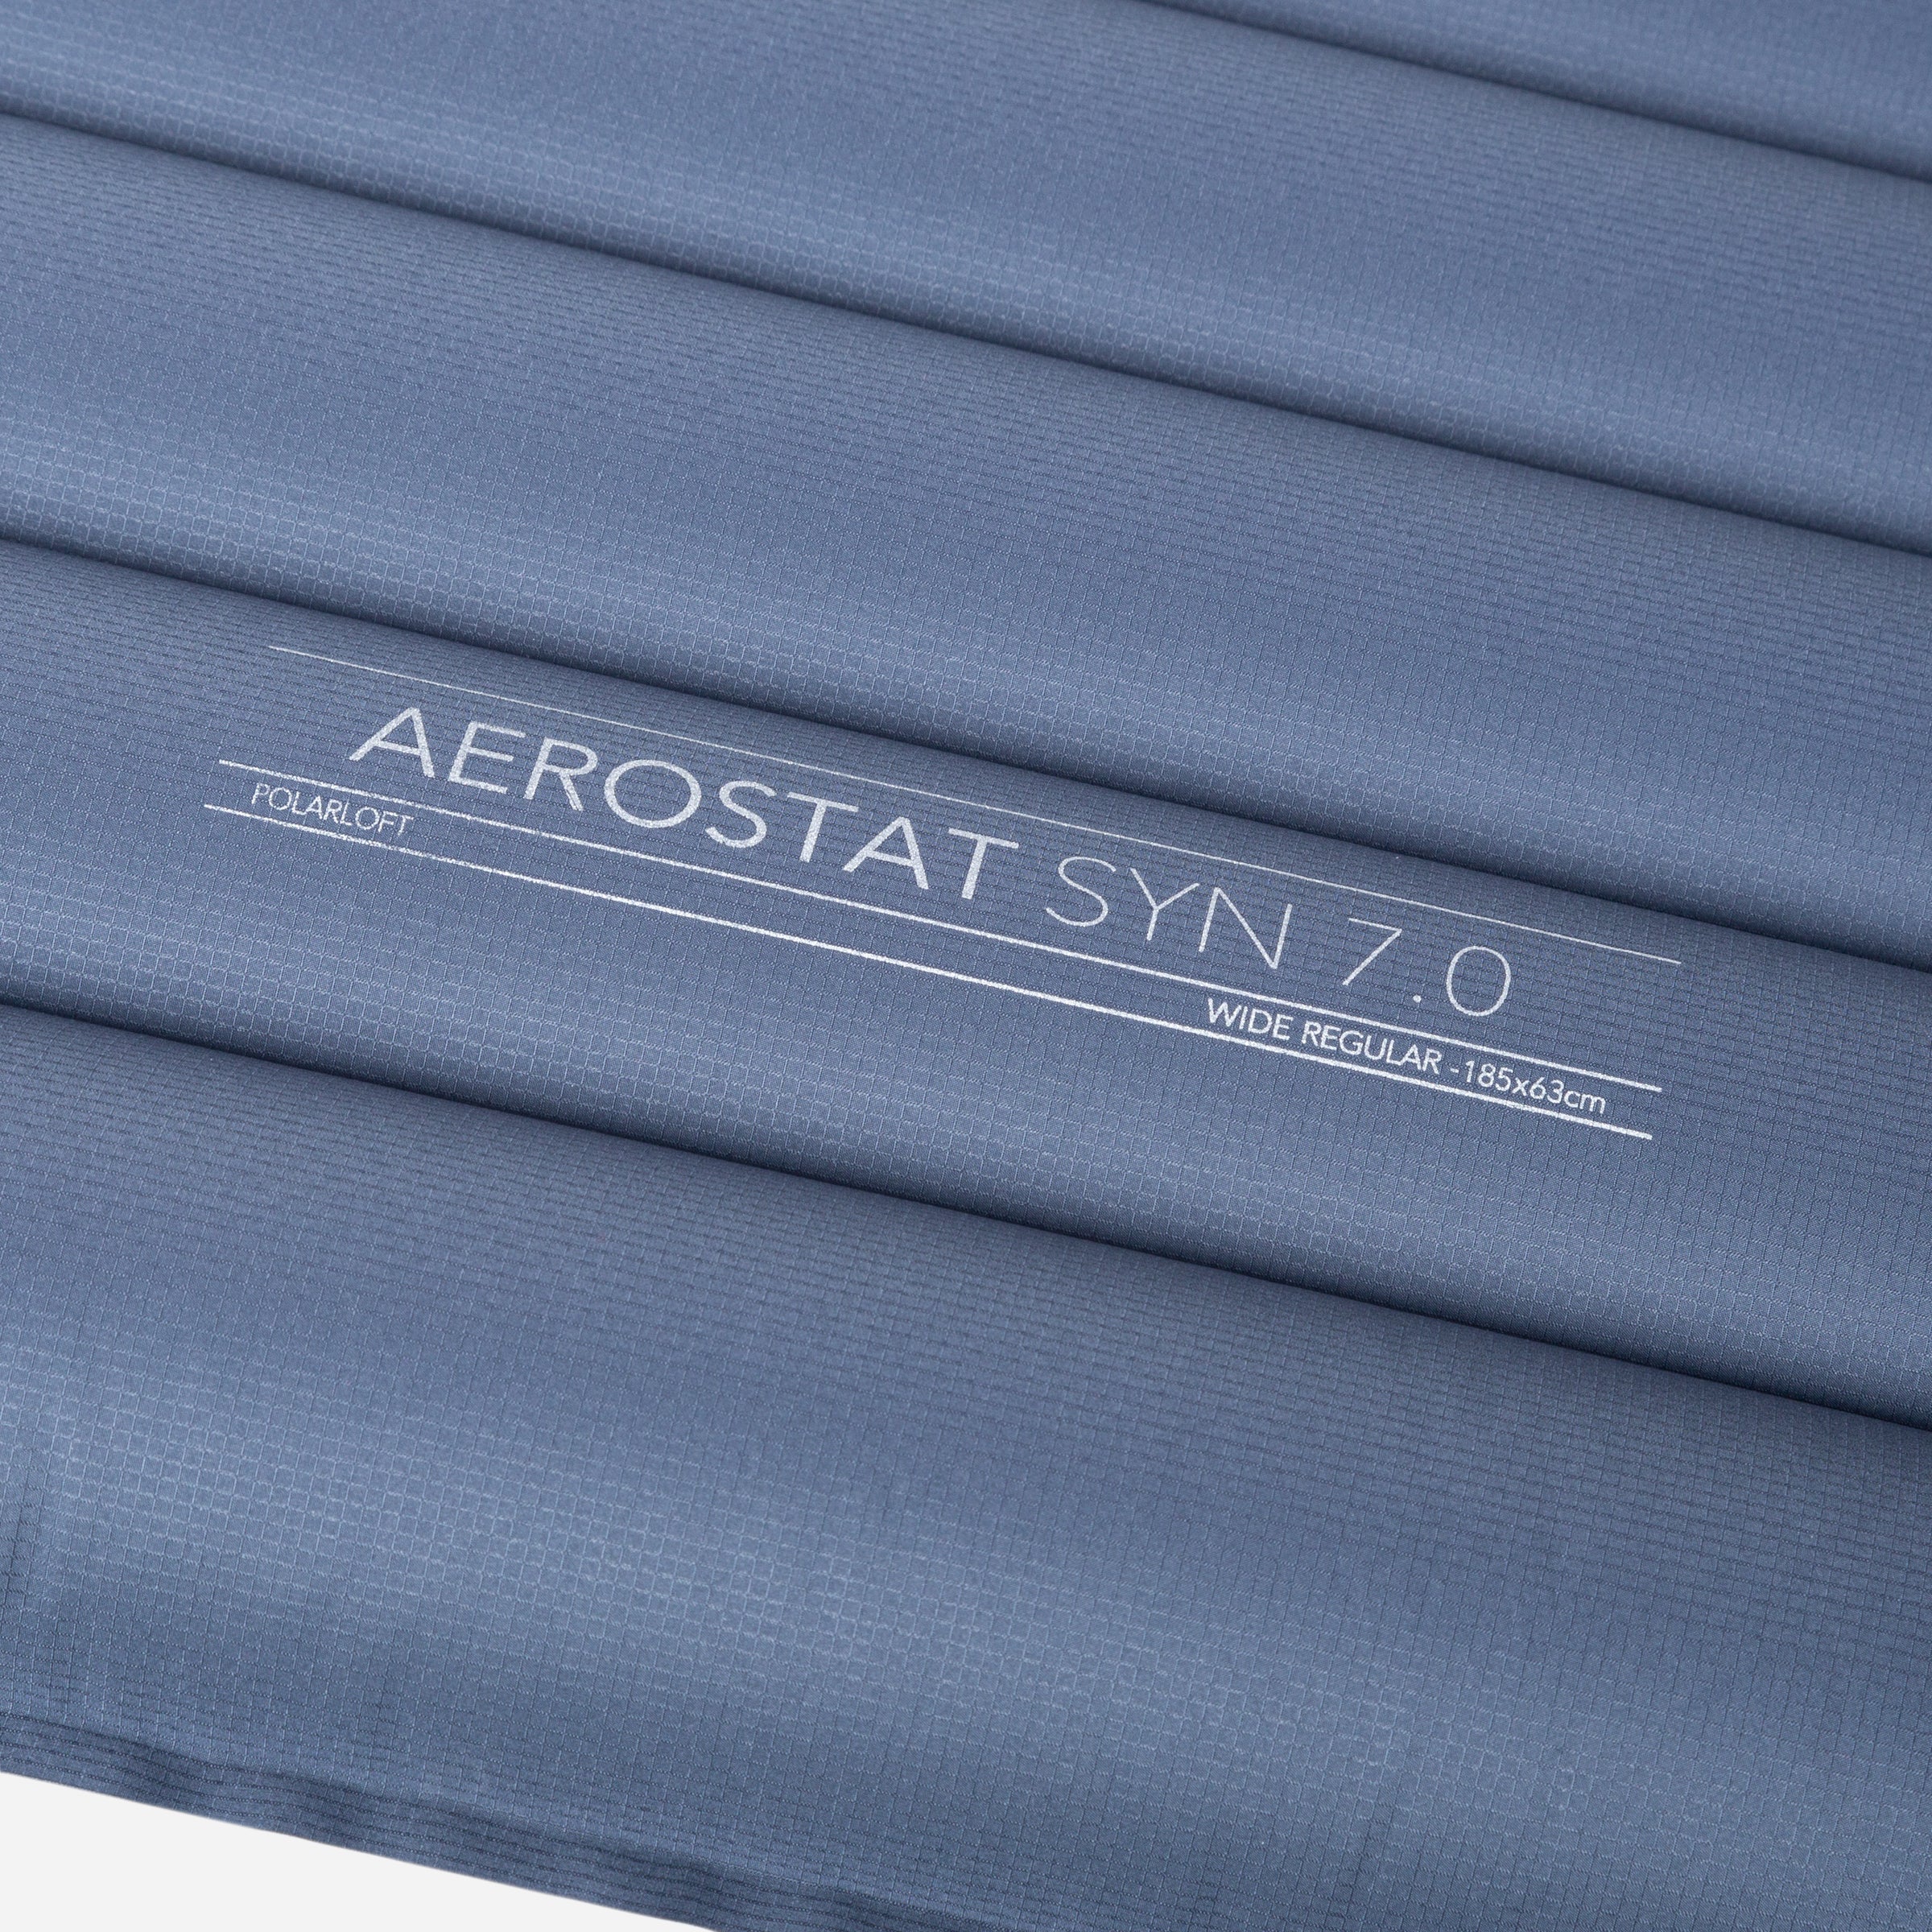 Testbericht: Unter Sternen träumen mit der Aerostat Synthetic 7.0 Isomatte  von Mountain Equipment